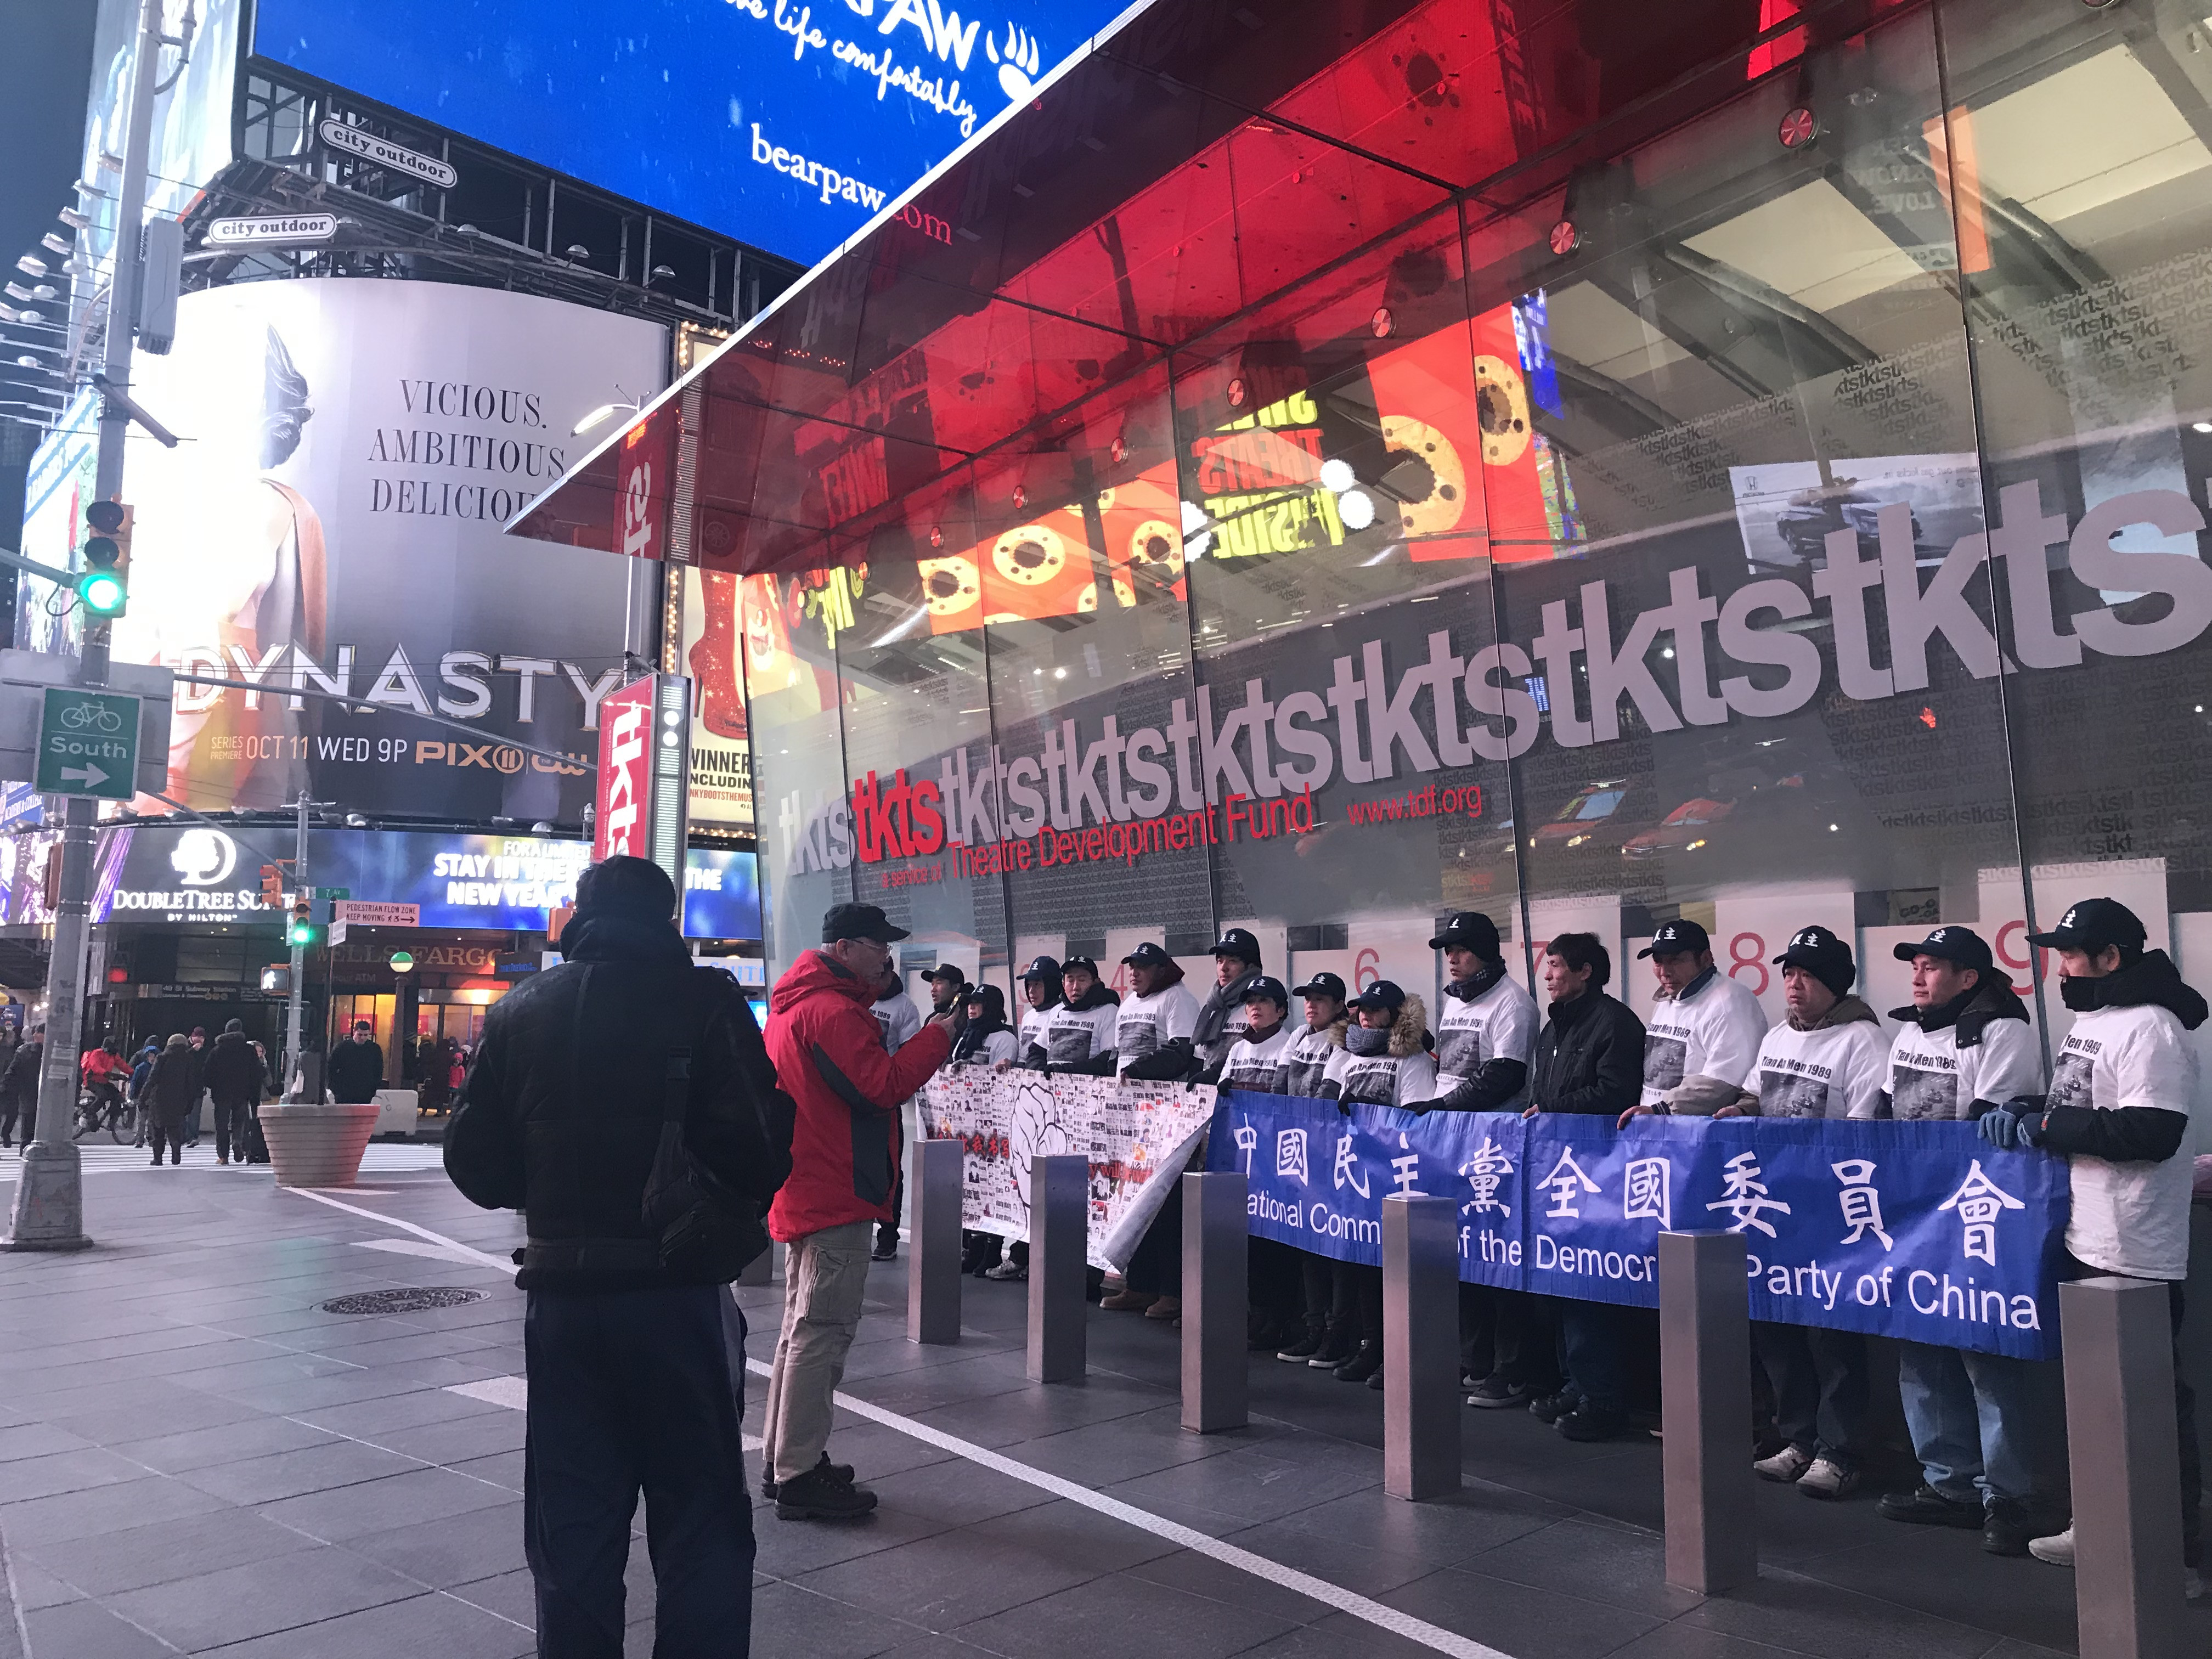 图文简讯：2018年1月27日 中国民主党在时代广场第363波茉莉花行动